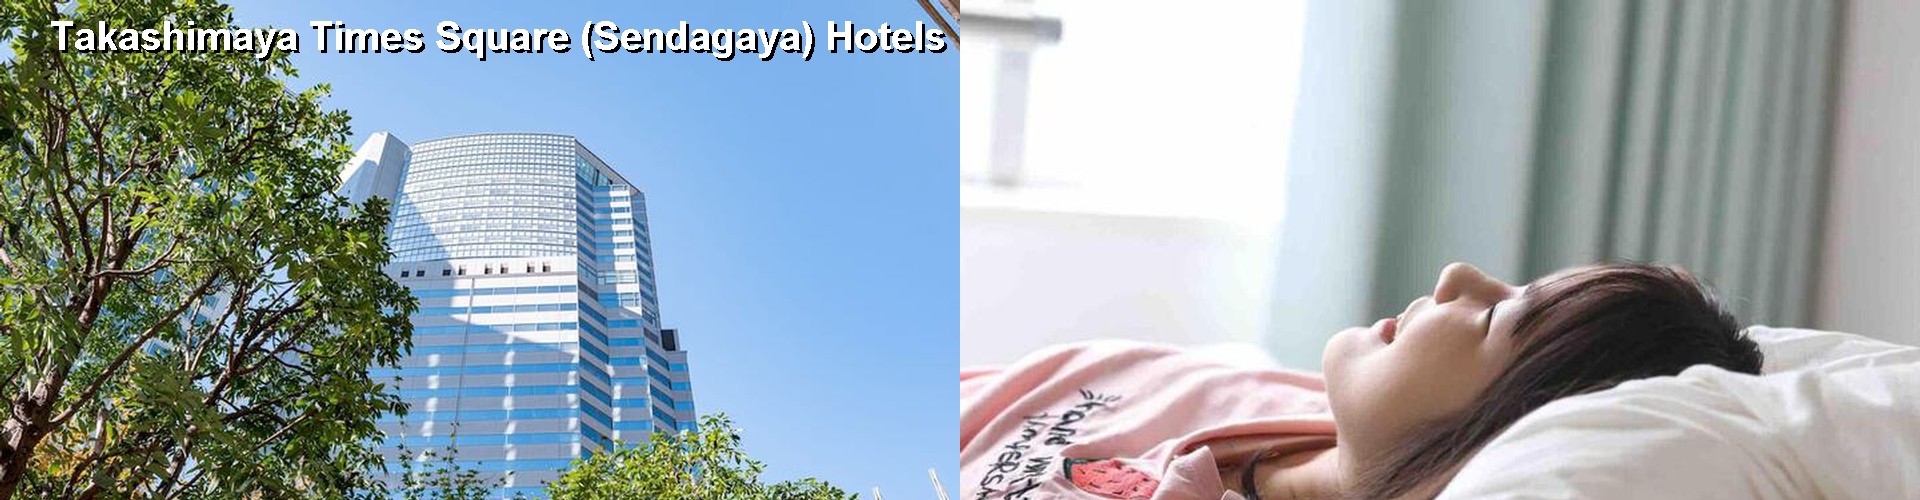 5 Best Hotels near Takashimaya Times Square (Sendagaya)